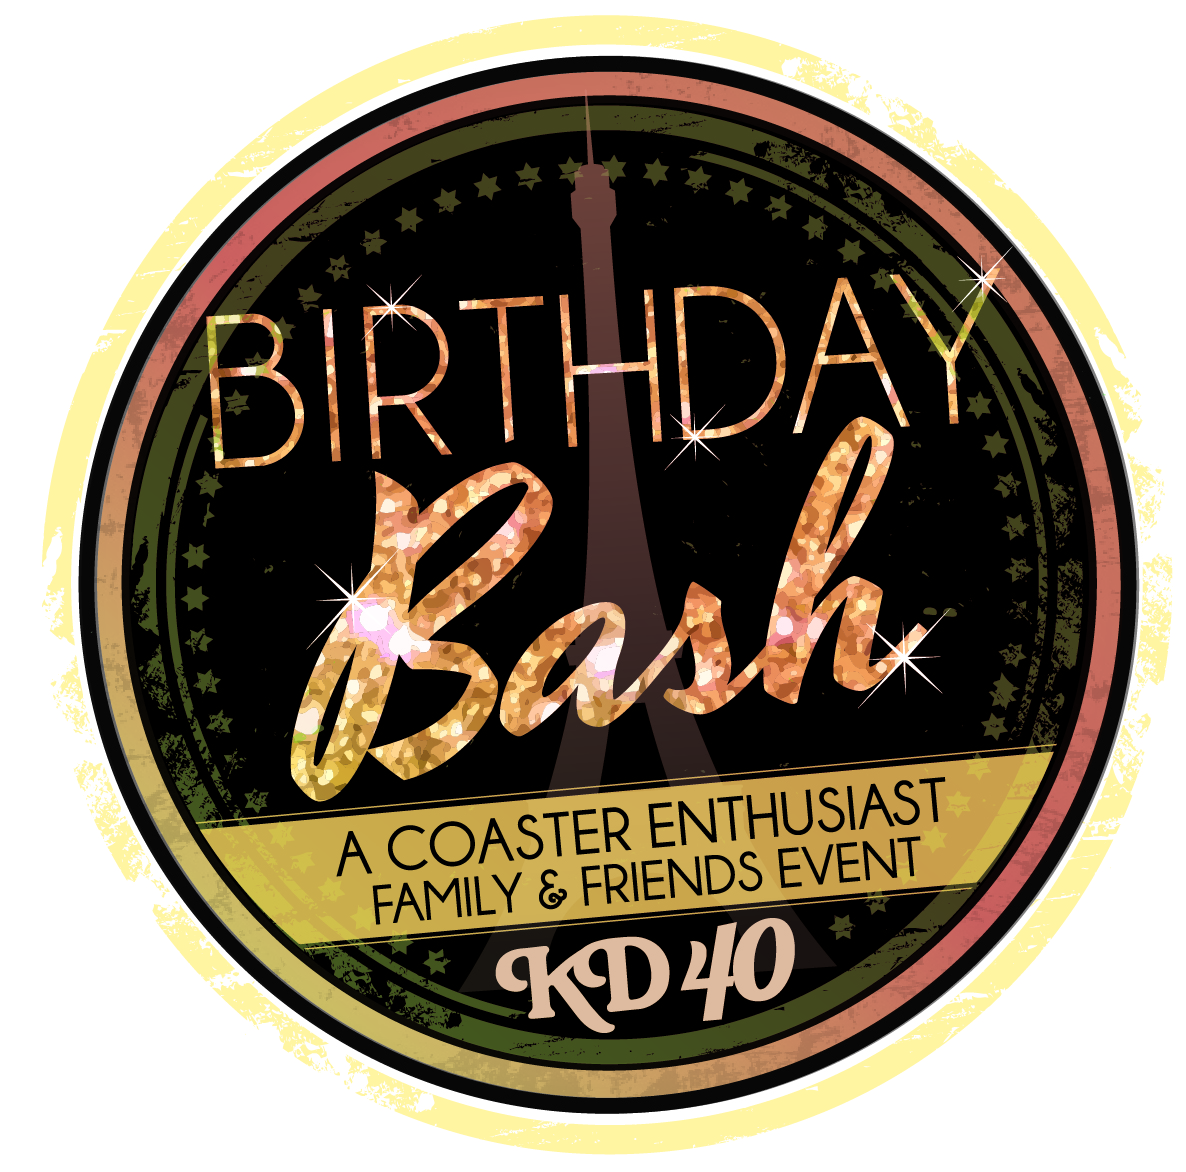 KD14-074 40th birthday bash